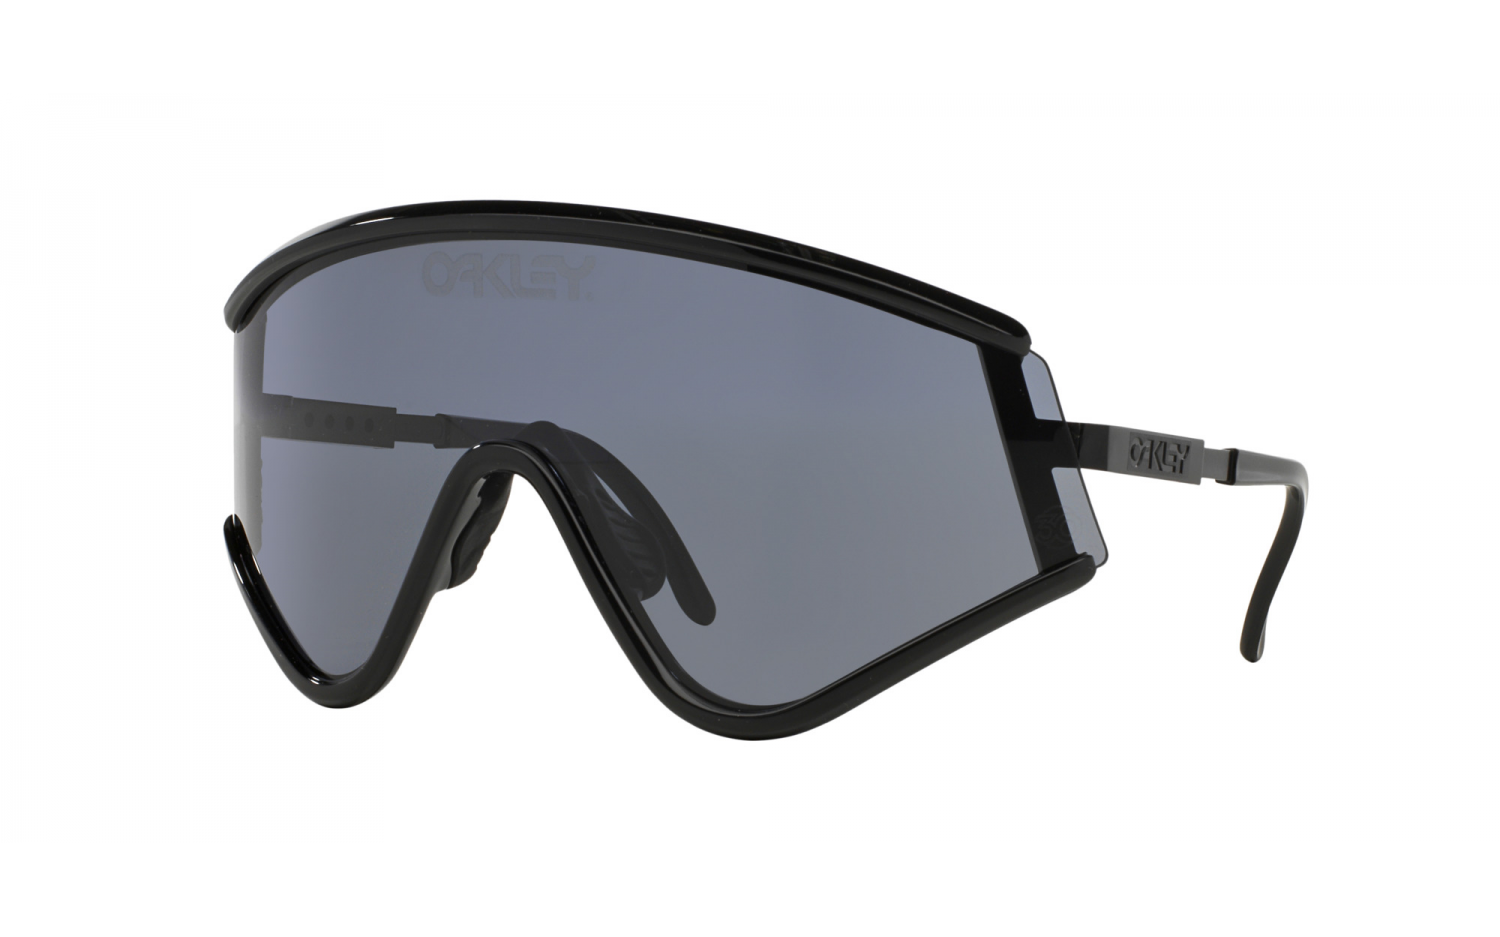 Vejrudsigt I forhold eksplodere Oakley Eyeshade OO9259-03 Sunglasses | Shade Station